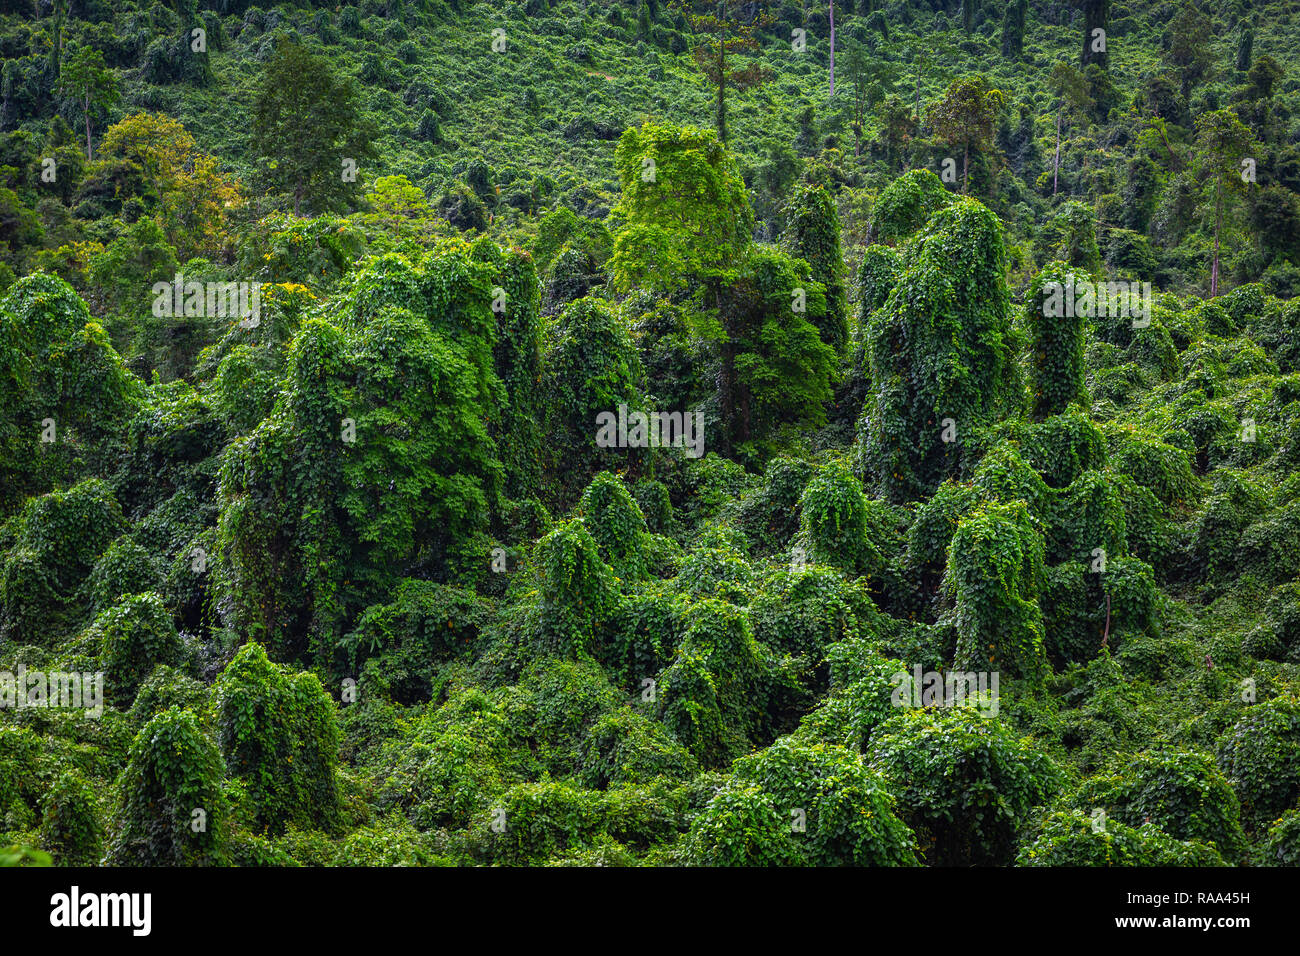 Lush jungle forest in Phong Nha-Ke Bang National Park, Phong Nha, Vietnam, Asia Stock Photo